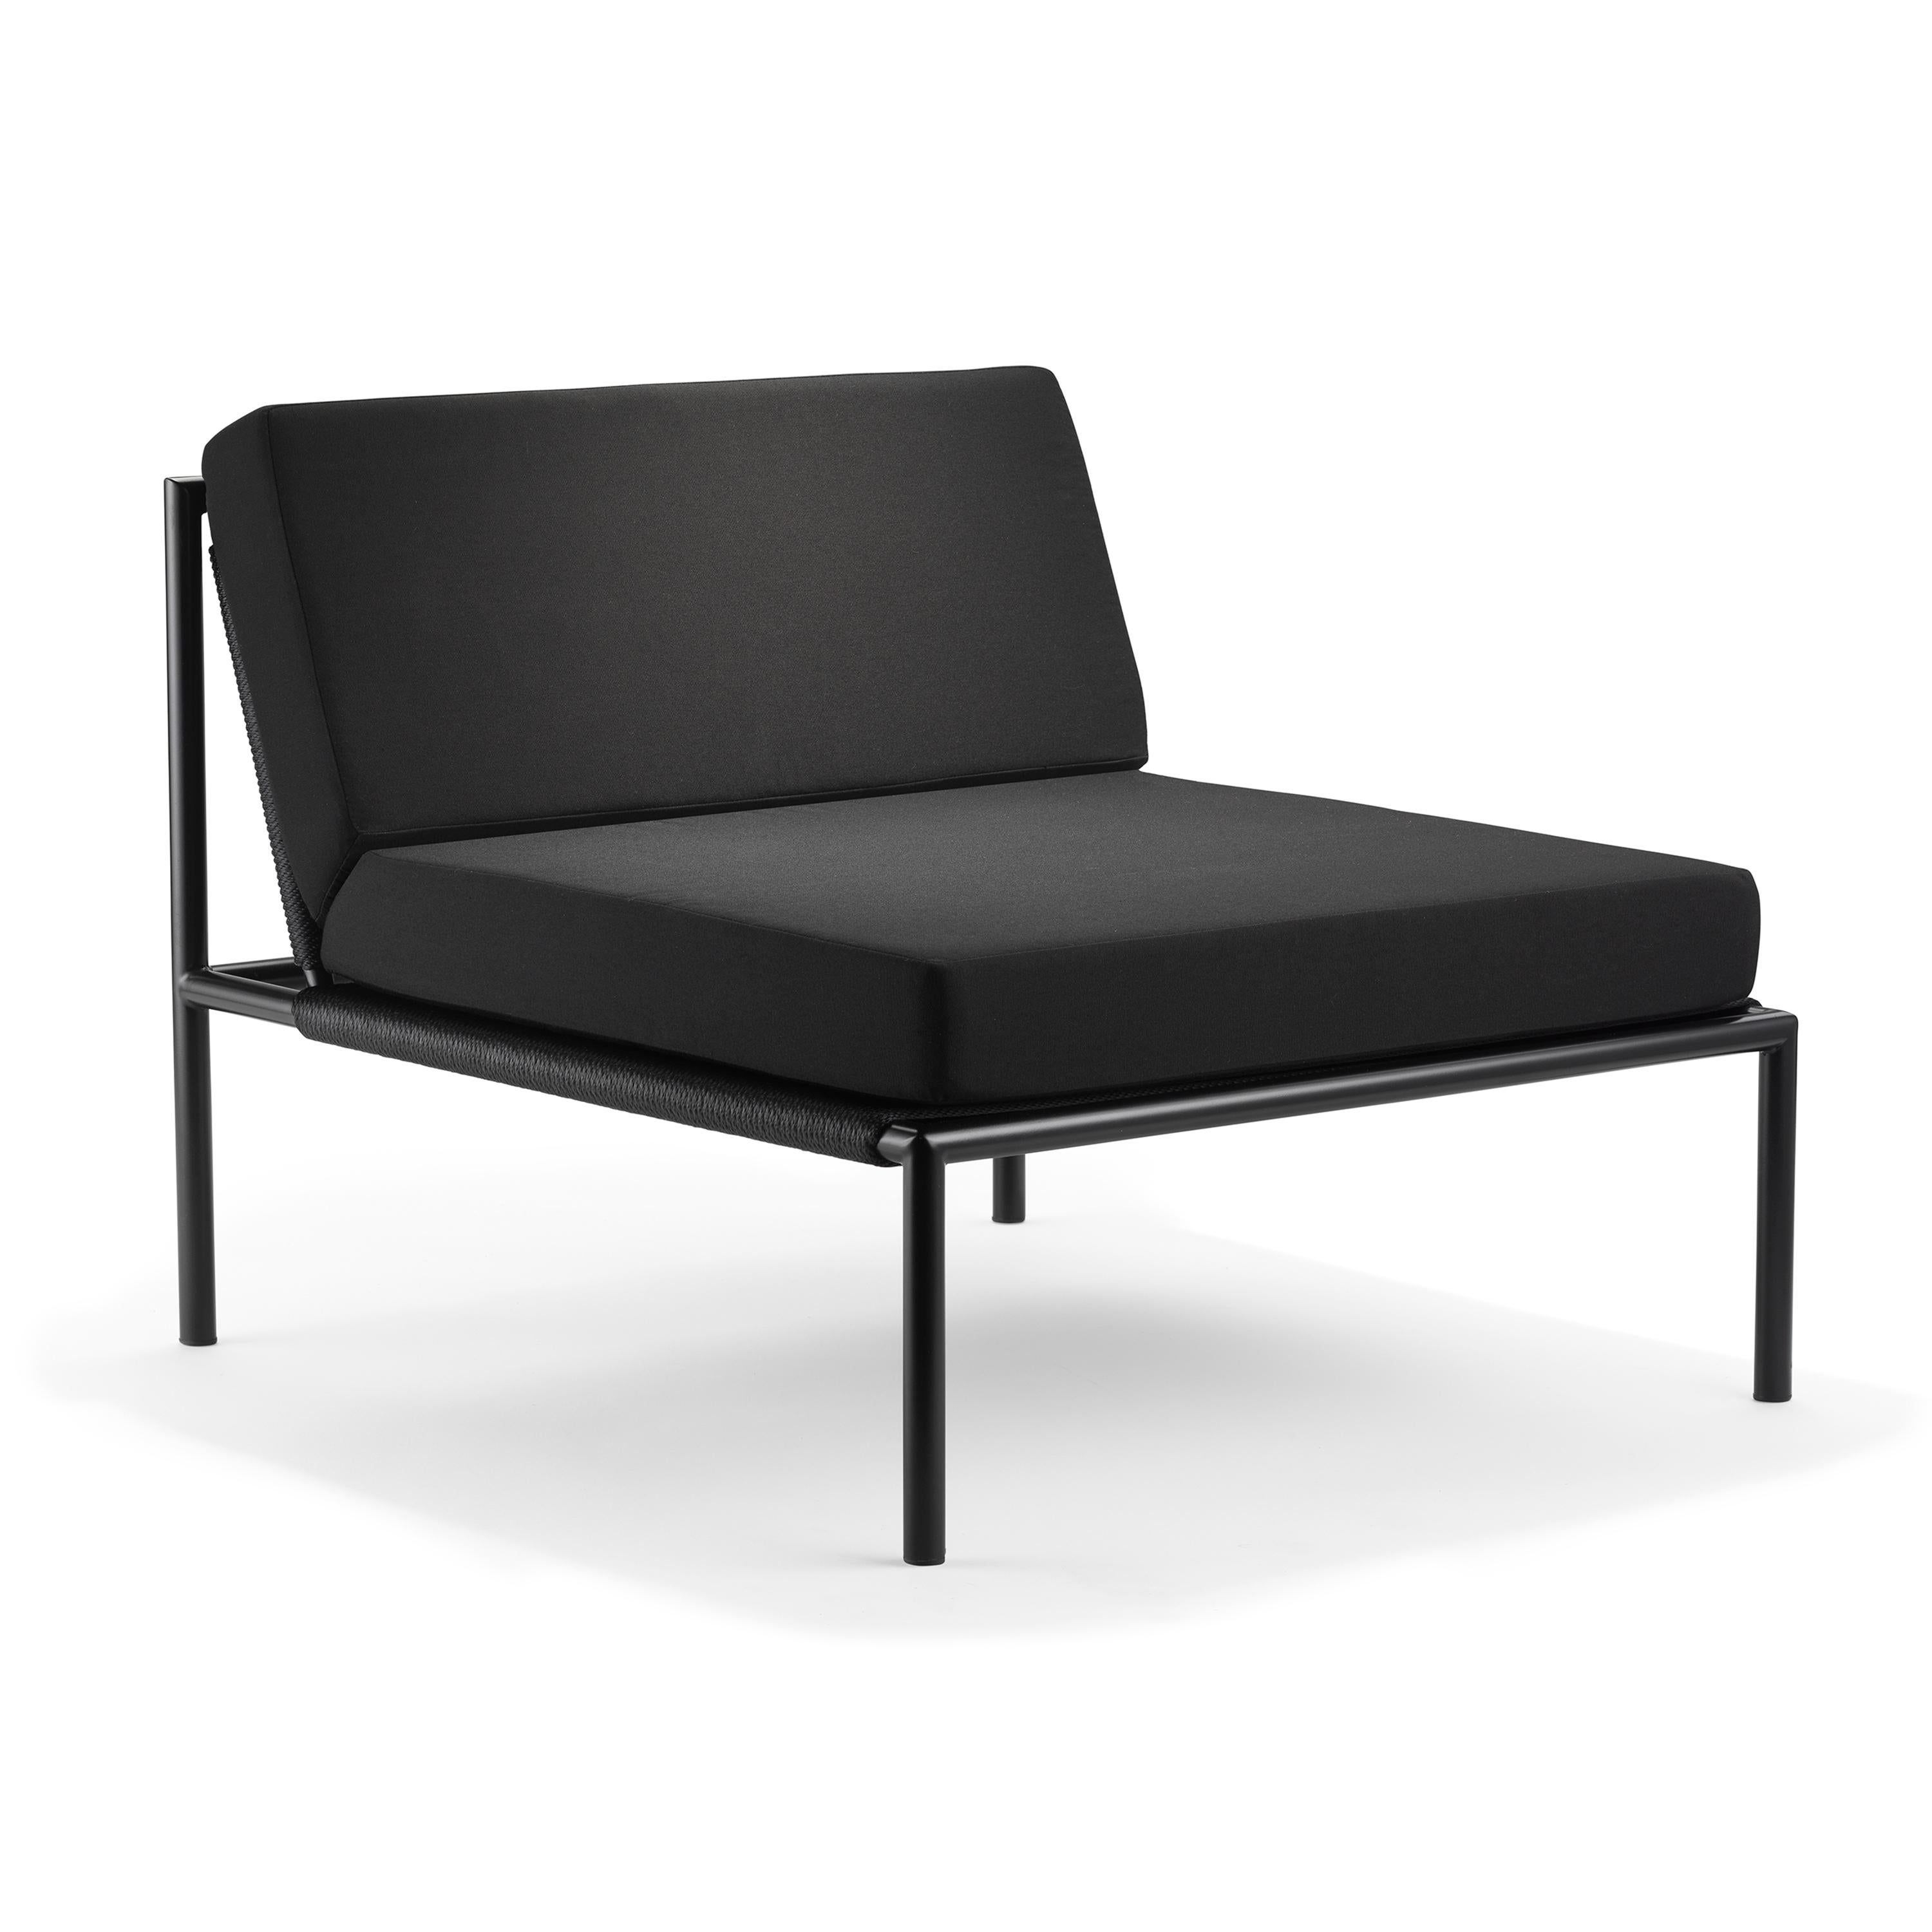 Ten10 1.2.3 Serie Stuhl / armlos aus halbglänzend schwarz pulverbeschichtetem Edelstahl, Nylonschnur in schwarz oder weiß und 4